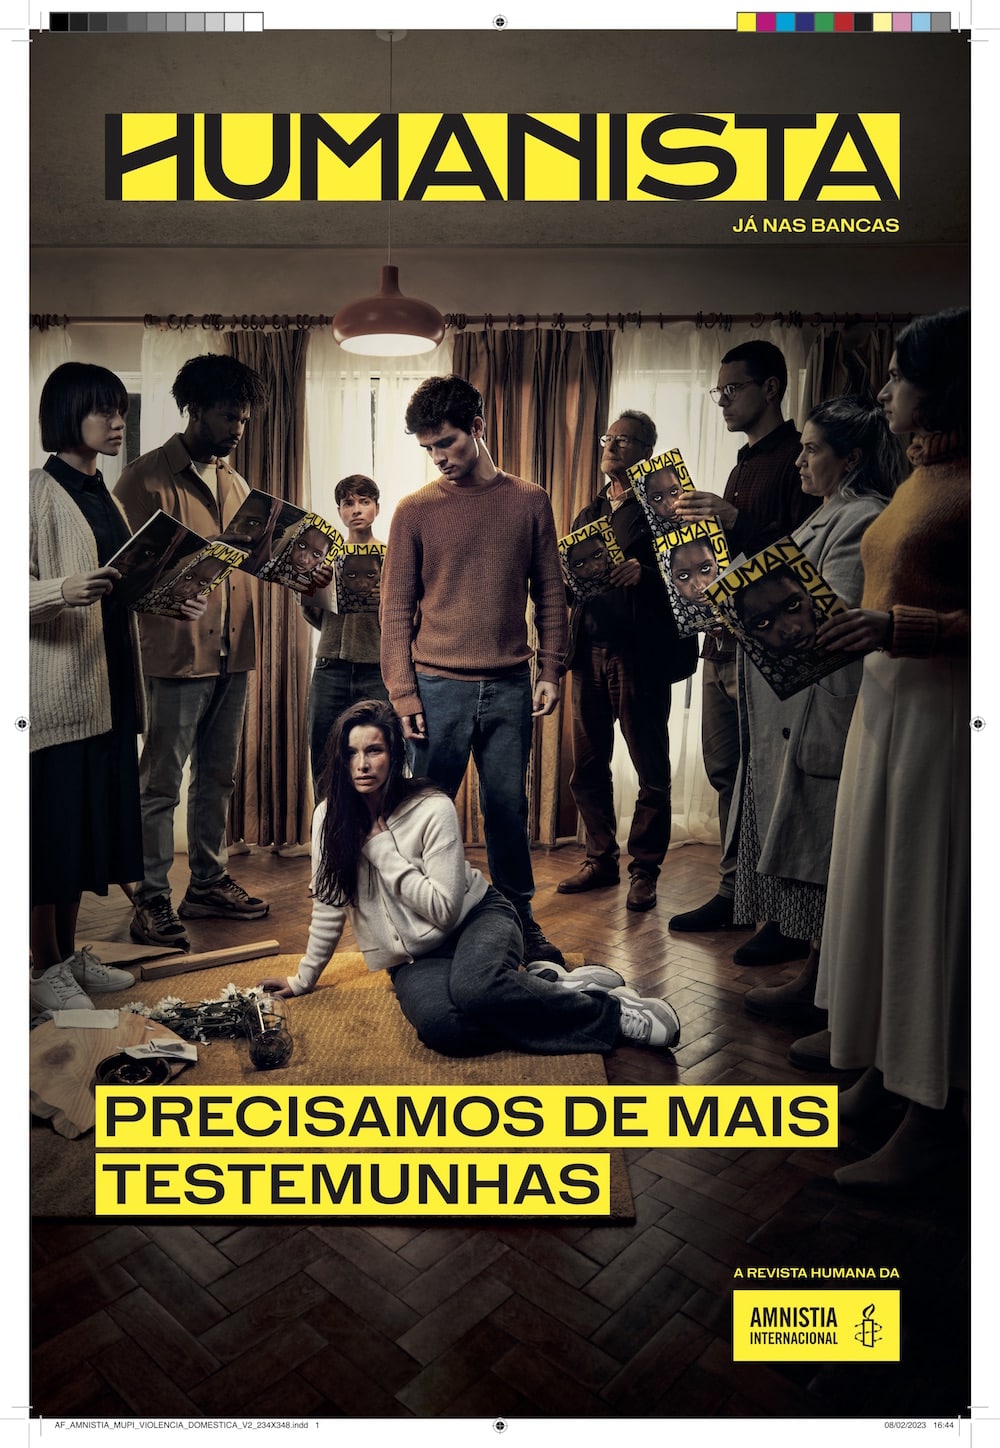 Kampagne für das neue Amnesty International Magazin Humanista: Auf dem Boden in einem Zuhause sitzt eine weibliche Person, die sich den Hals hält. Hinter ihr steht ein Mann, der auf sie herabschaut. Drum herum stehen mehrere Personen und lesen das neue Humanista-Magazin. 